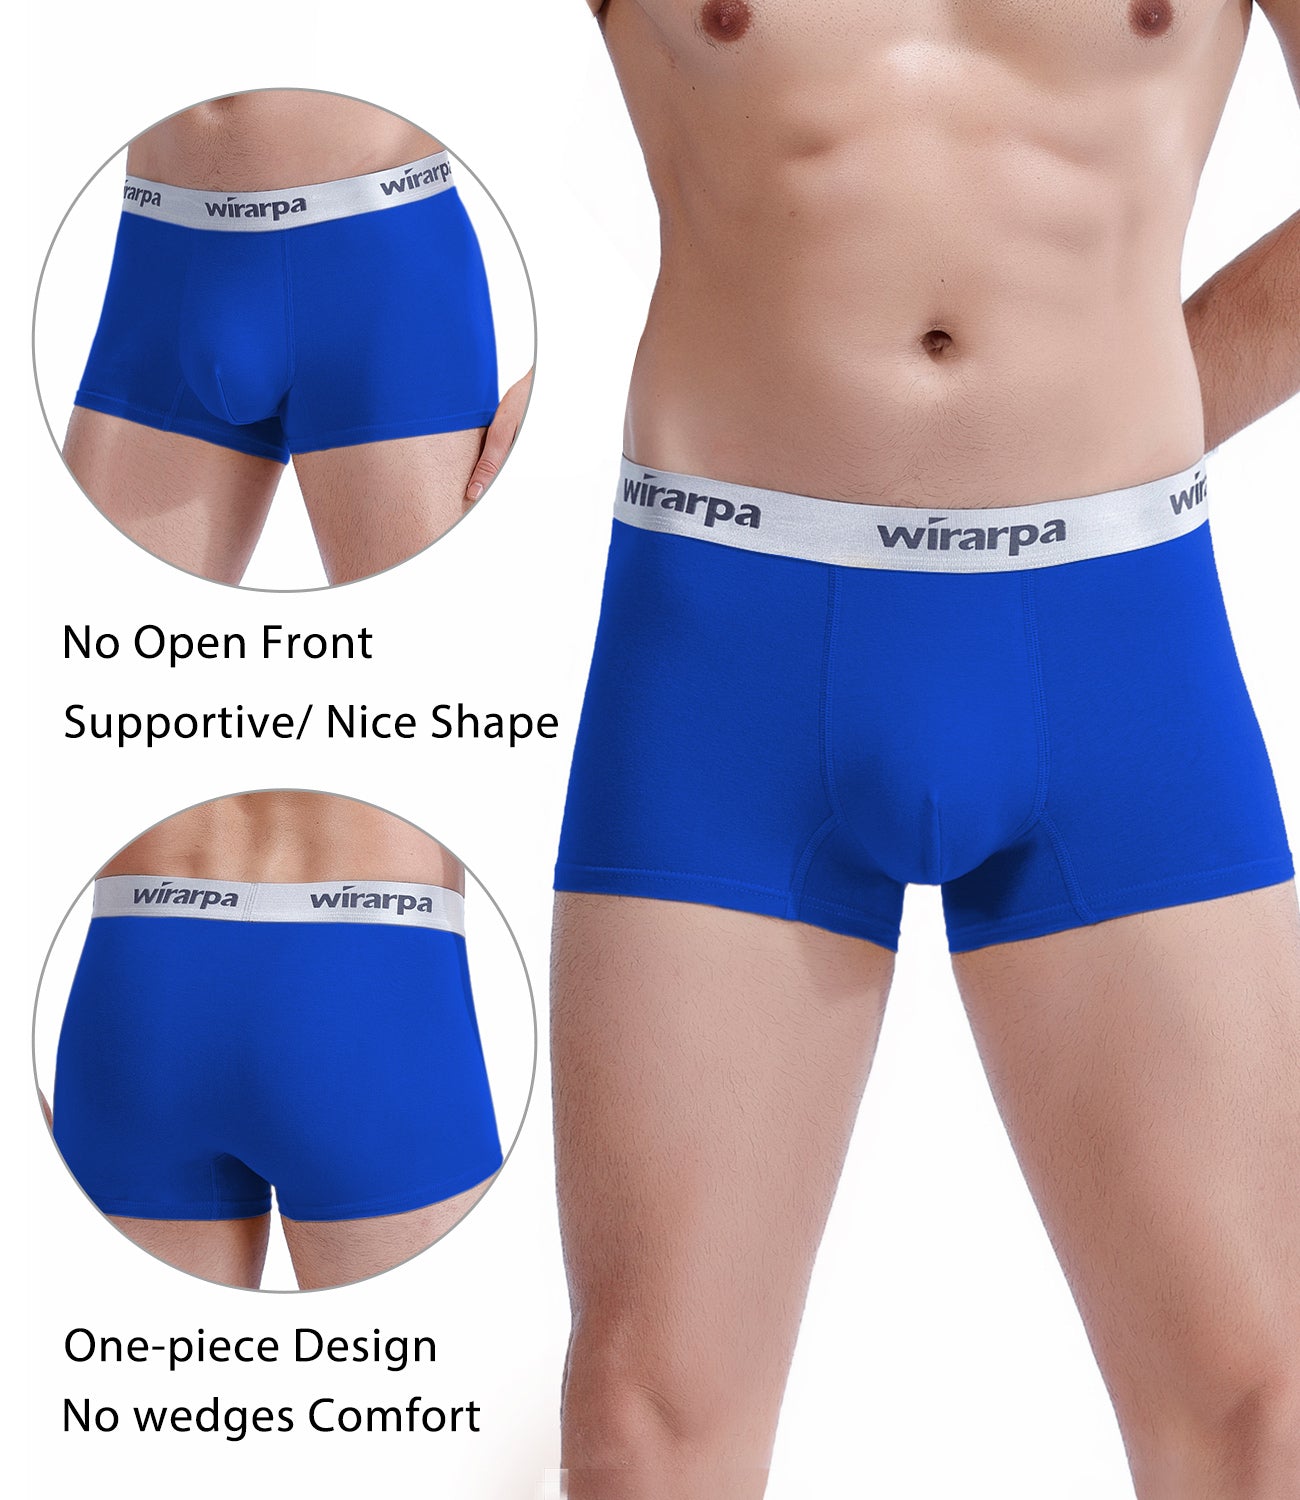 wirarpa Men's Cotton Trunks Soft Stretch Wide Waistband Underwear 4 Pack